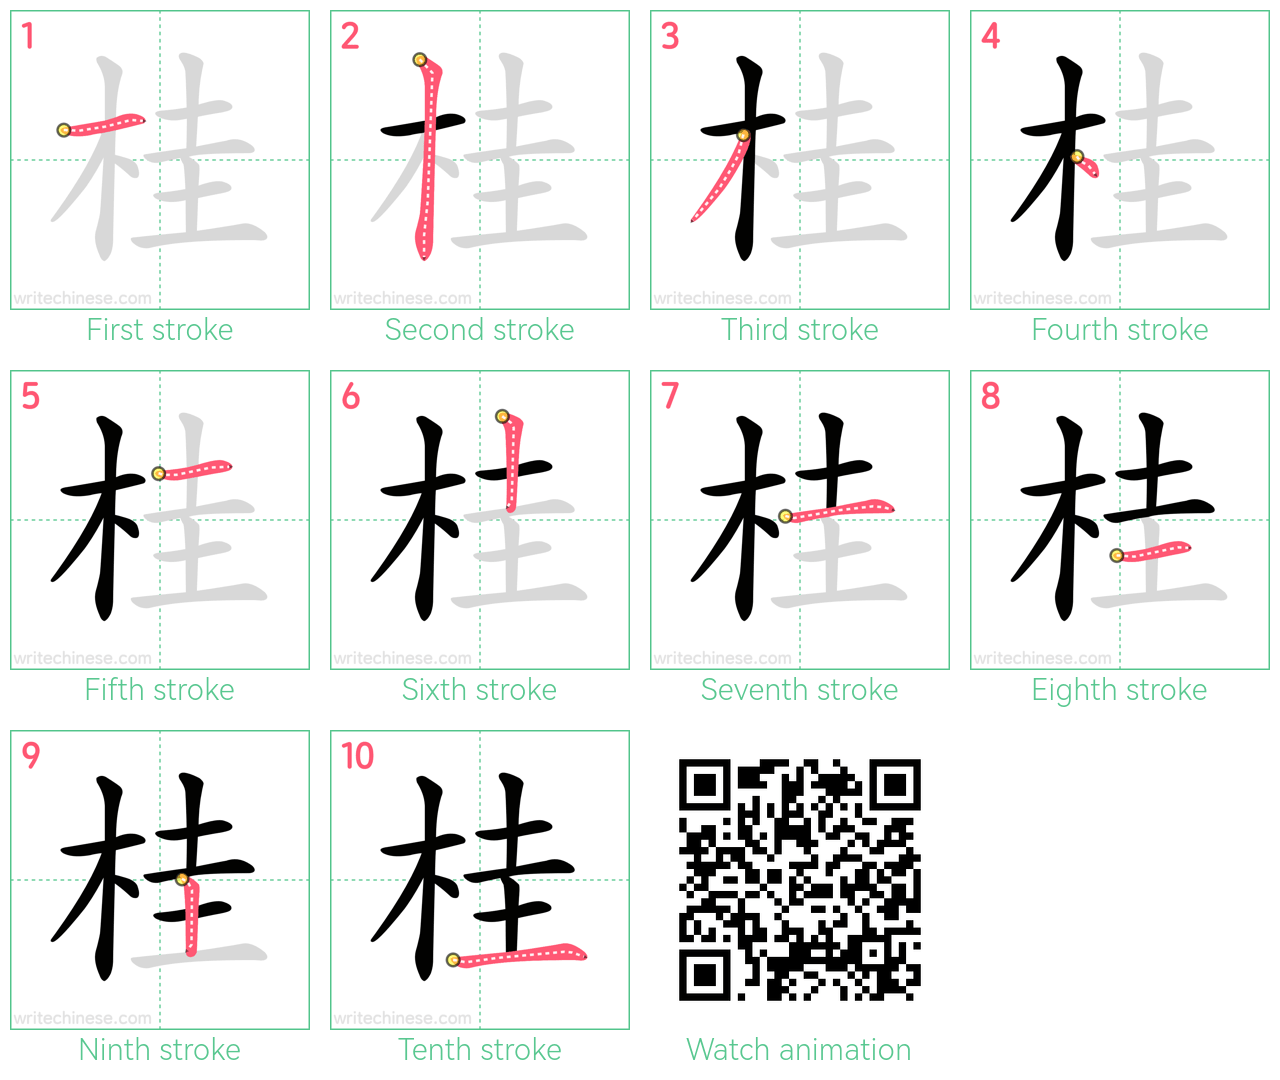 桂 step-by-step stroke order diagrams